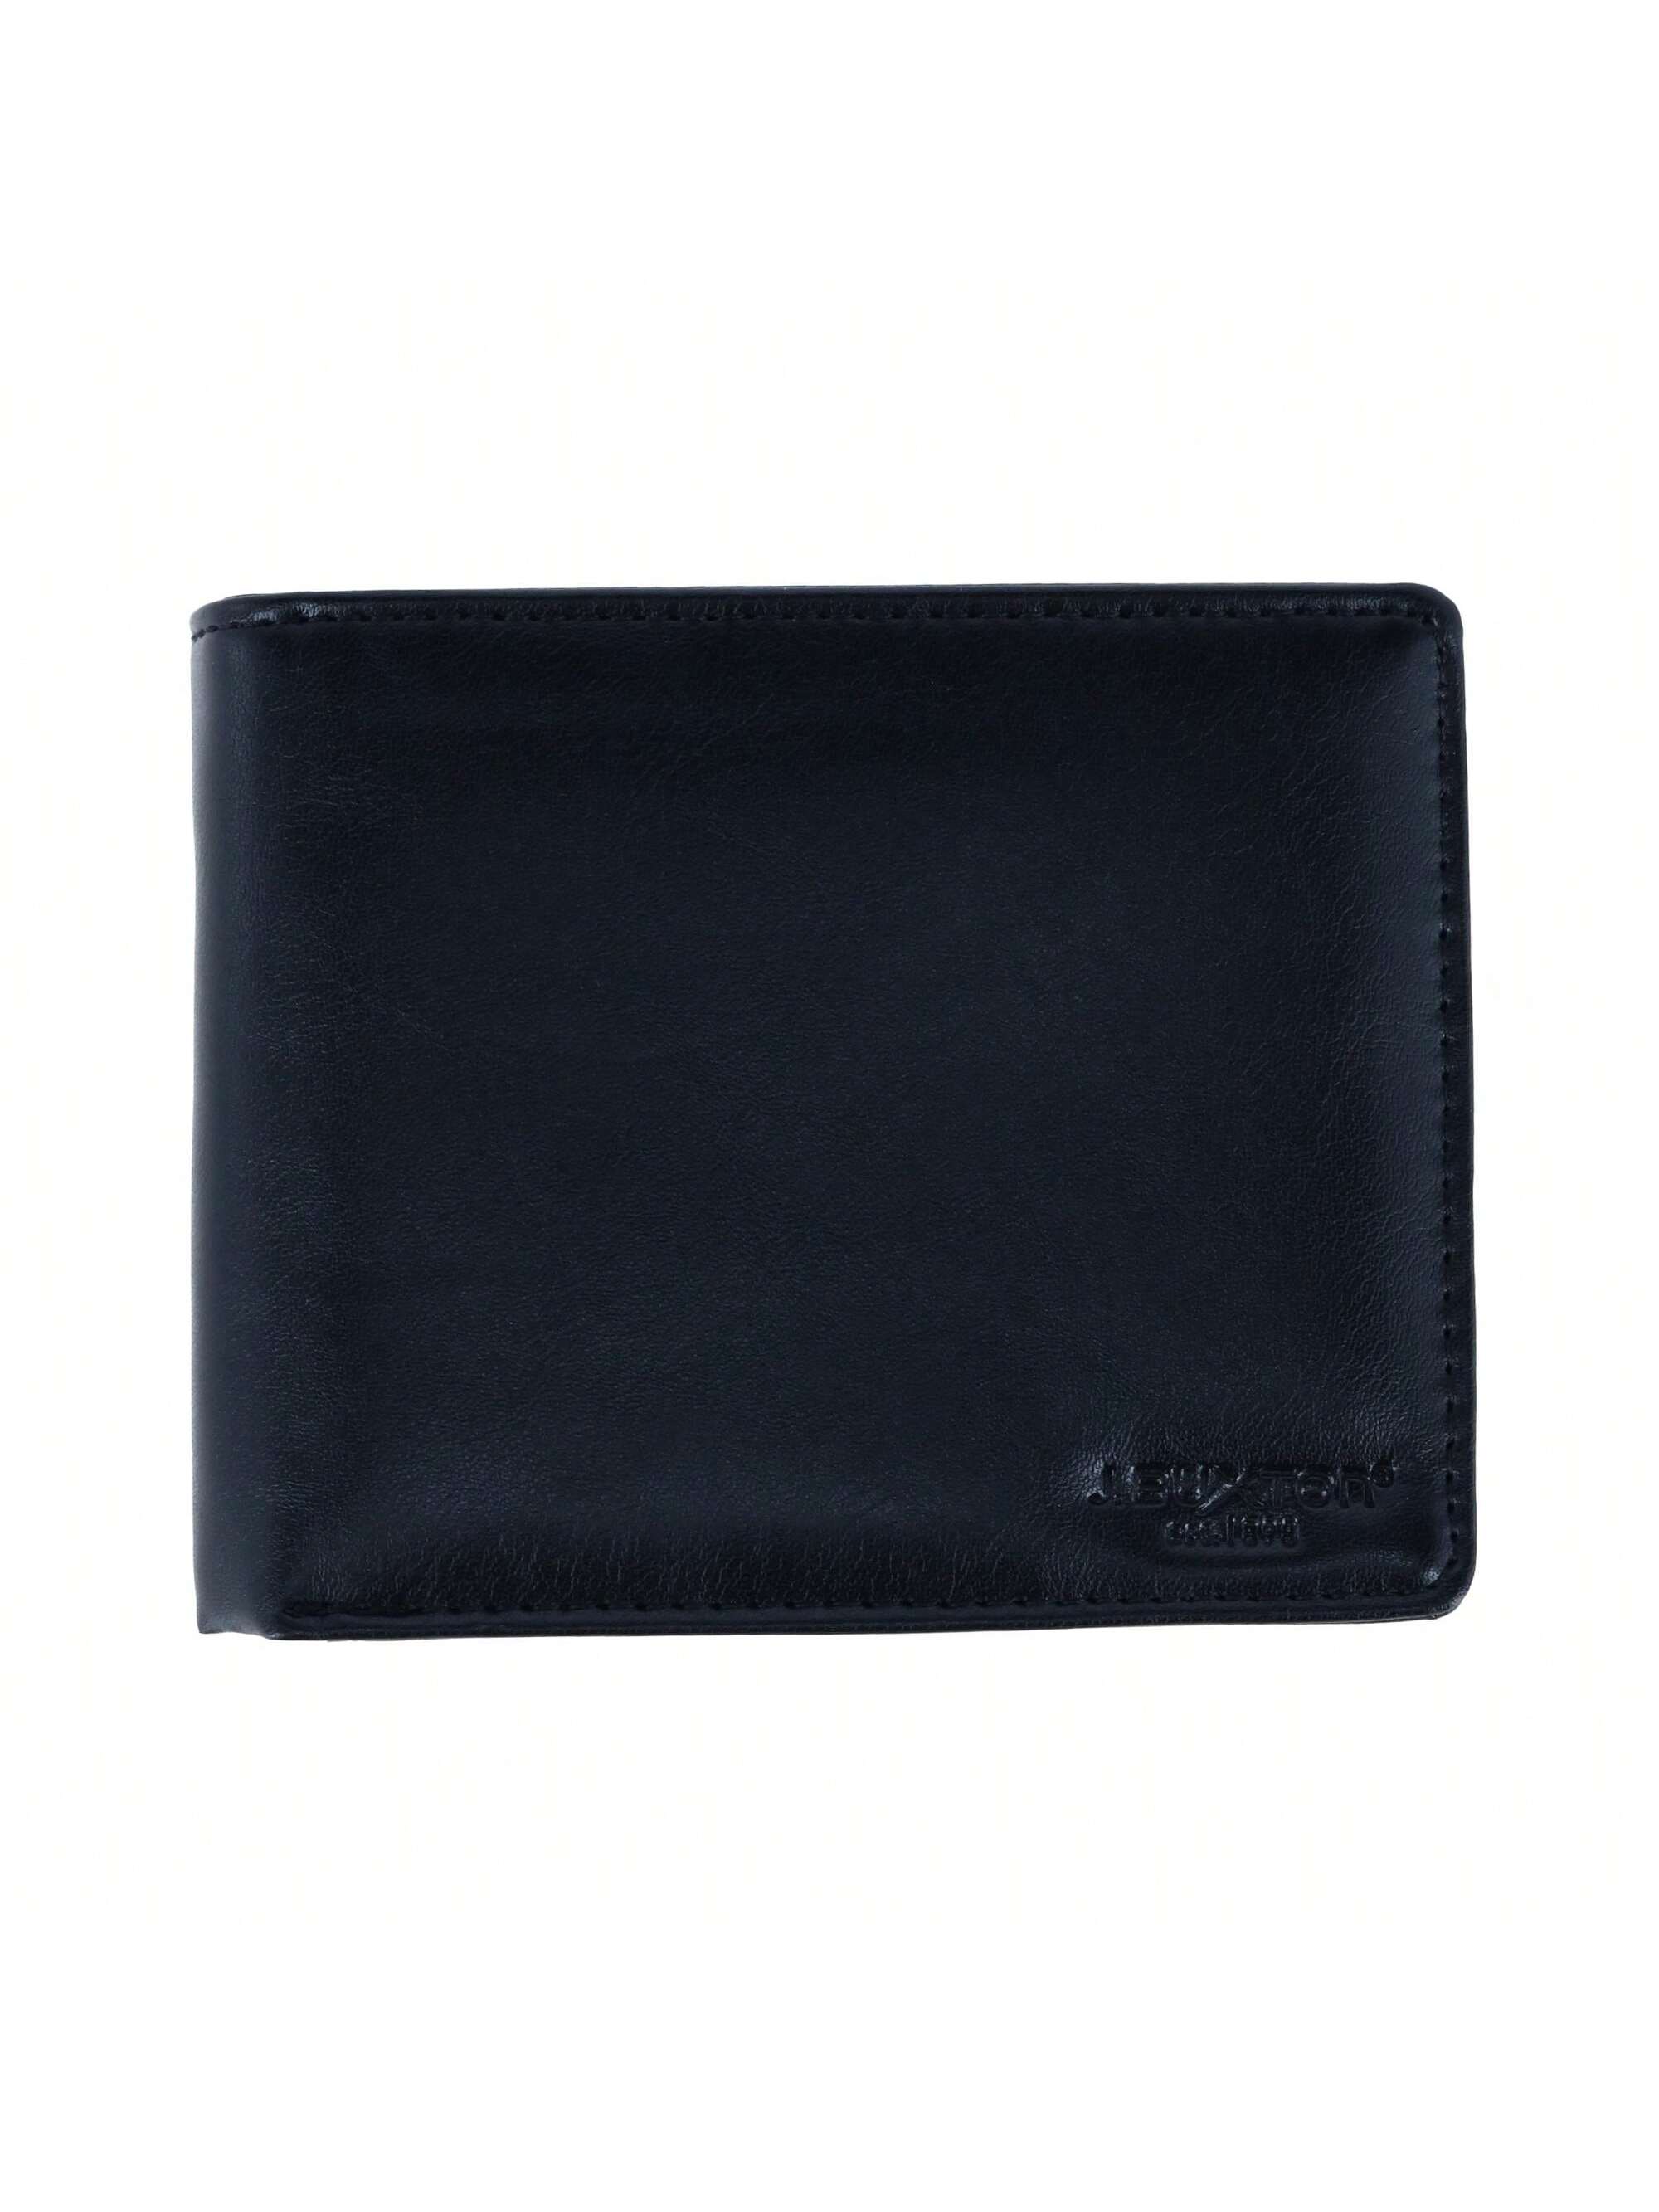 цена Мужской кошелек Buxton из веганской кожи с RFID-метками и двойным складыванием, черный